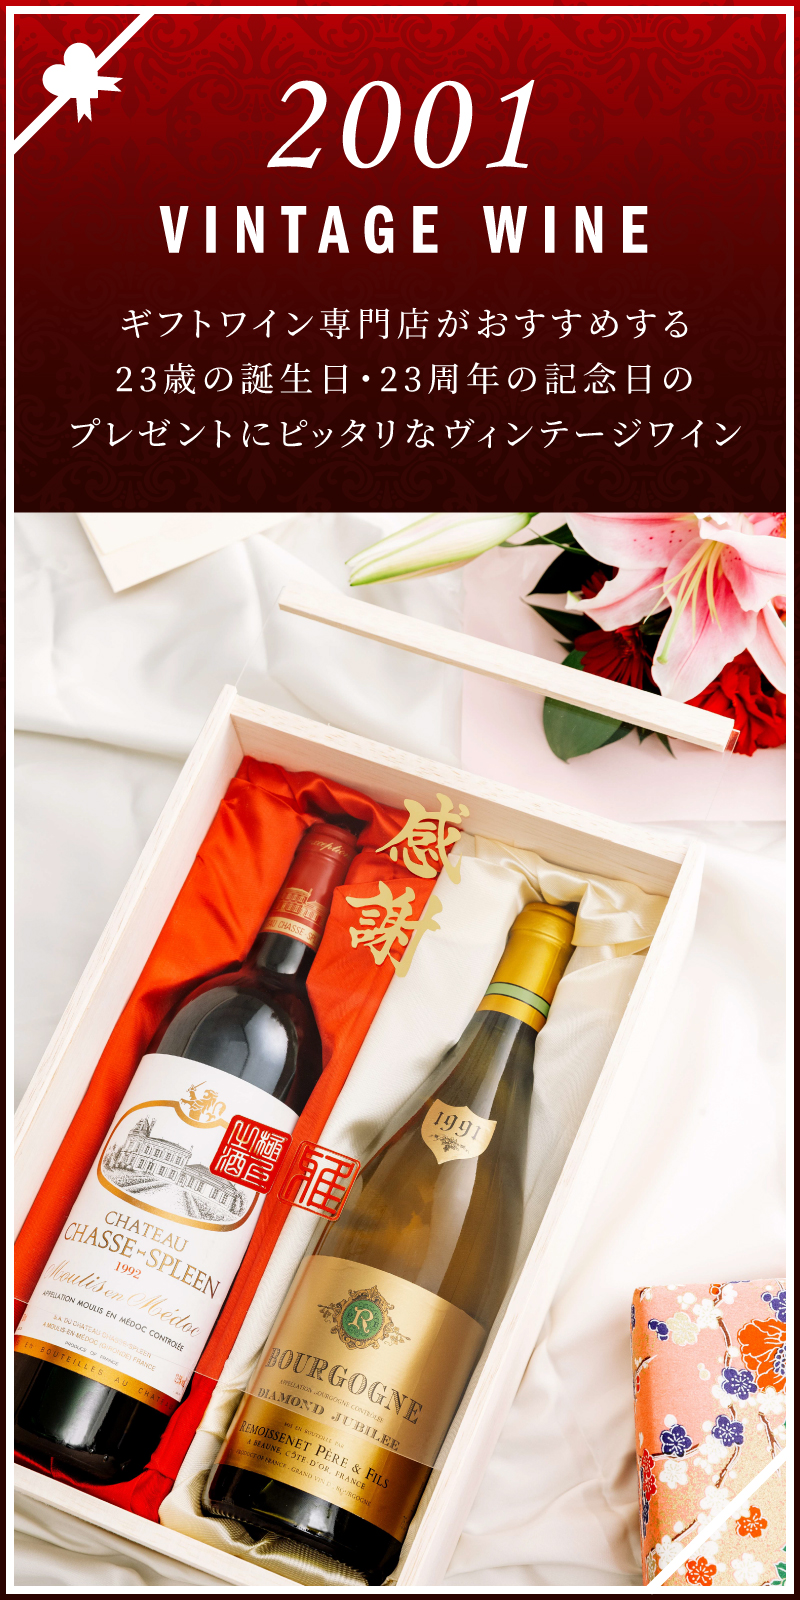 01年のワインを販売 歳 成人の誕生日 周年記念のプレゼント ワイン通販 Lovewine ラブワイン